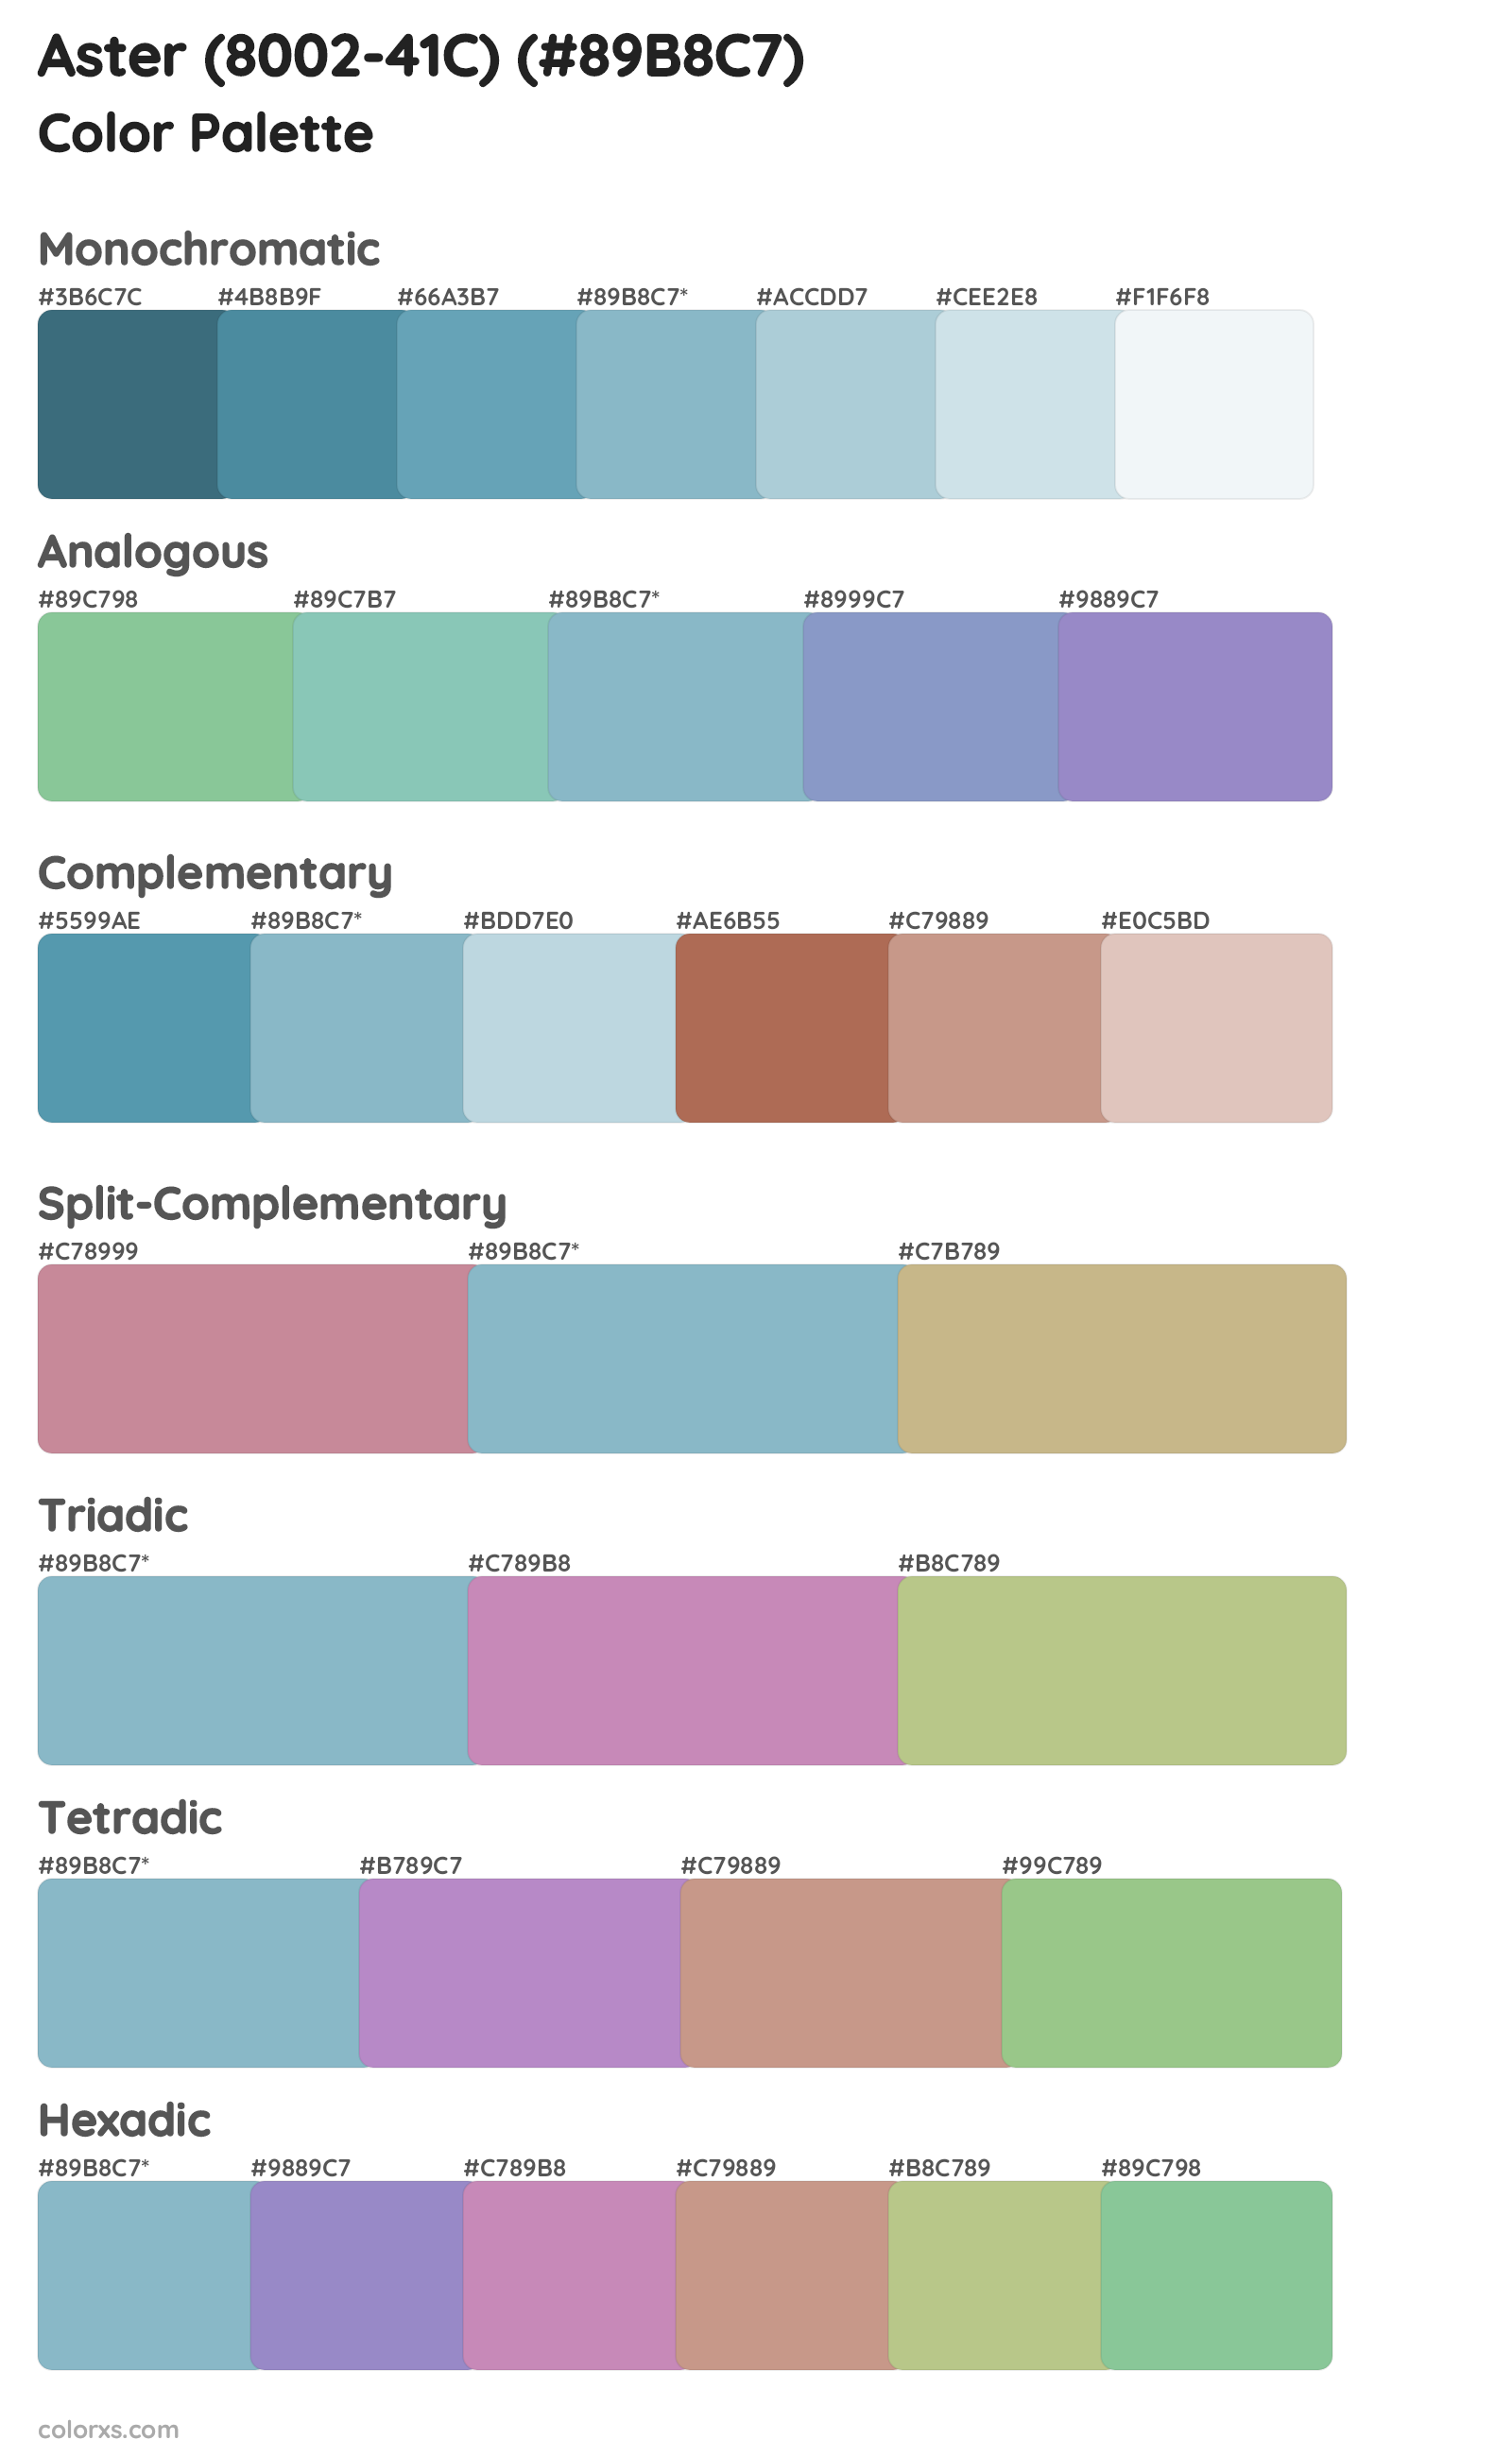 Aster (8002-41C) Color Scheme Palettes